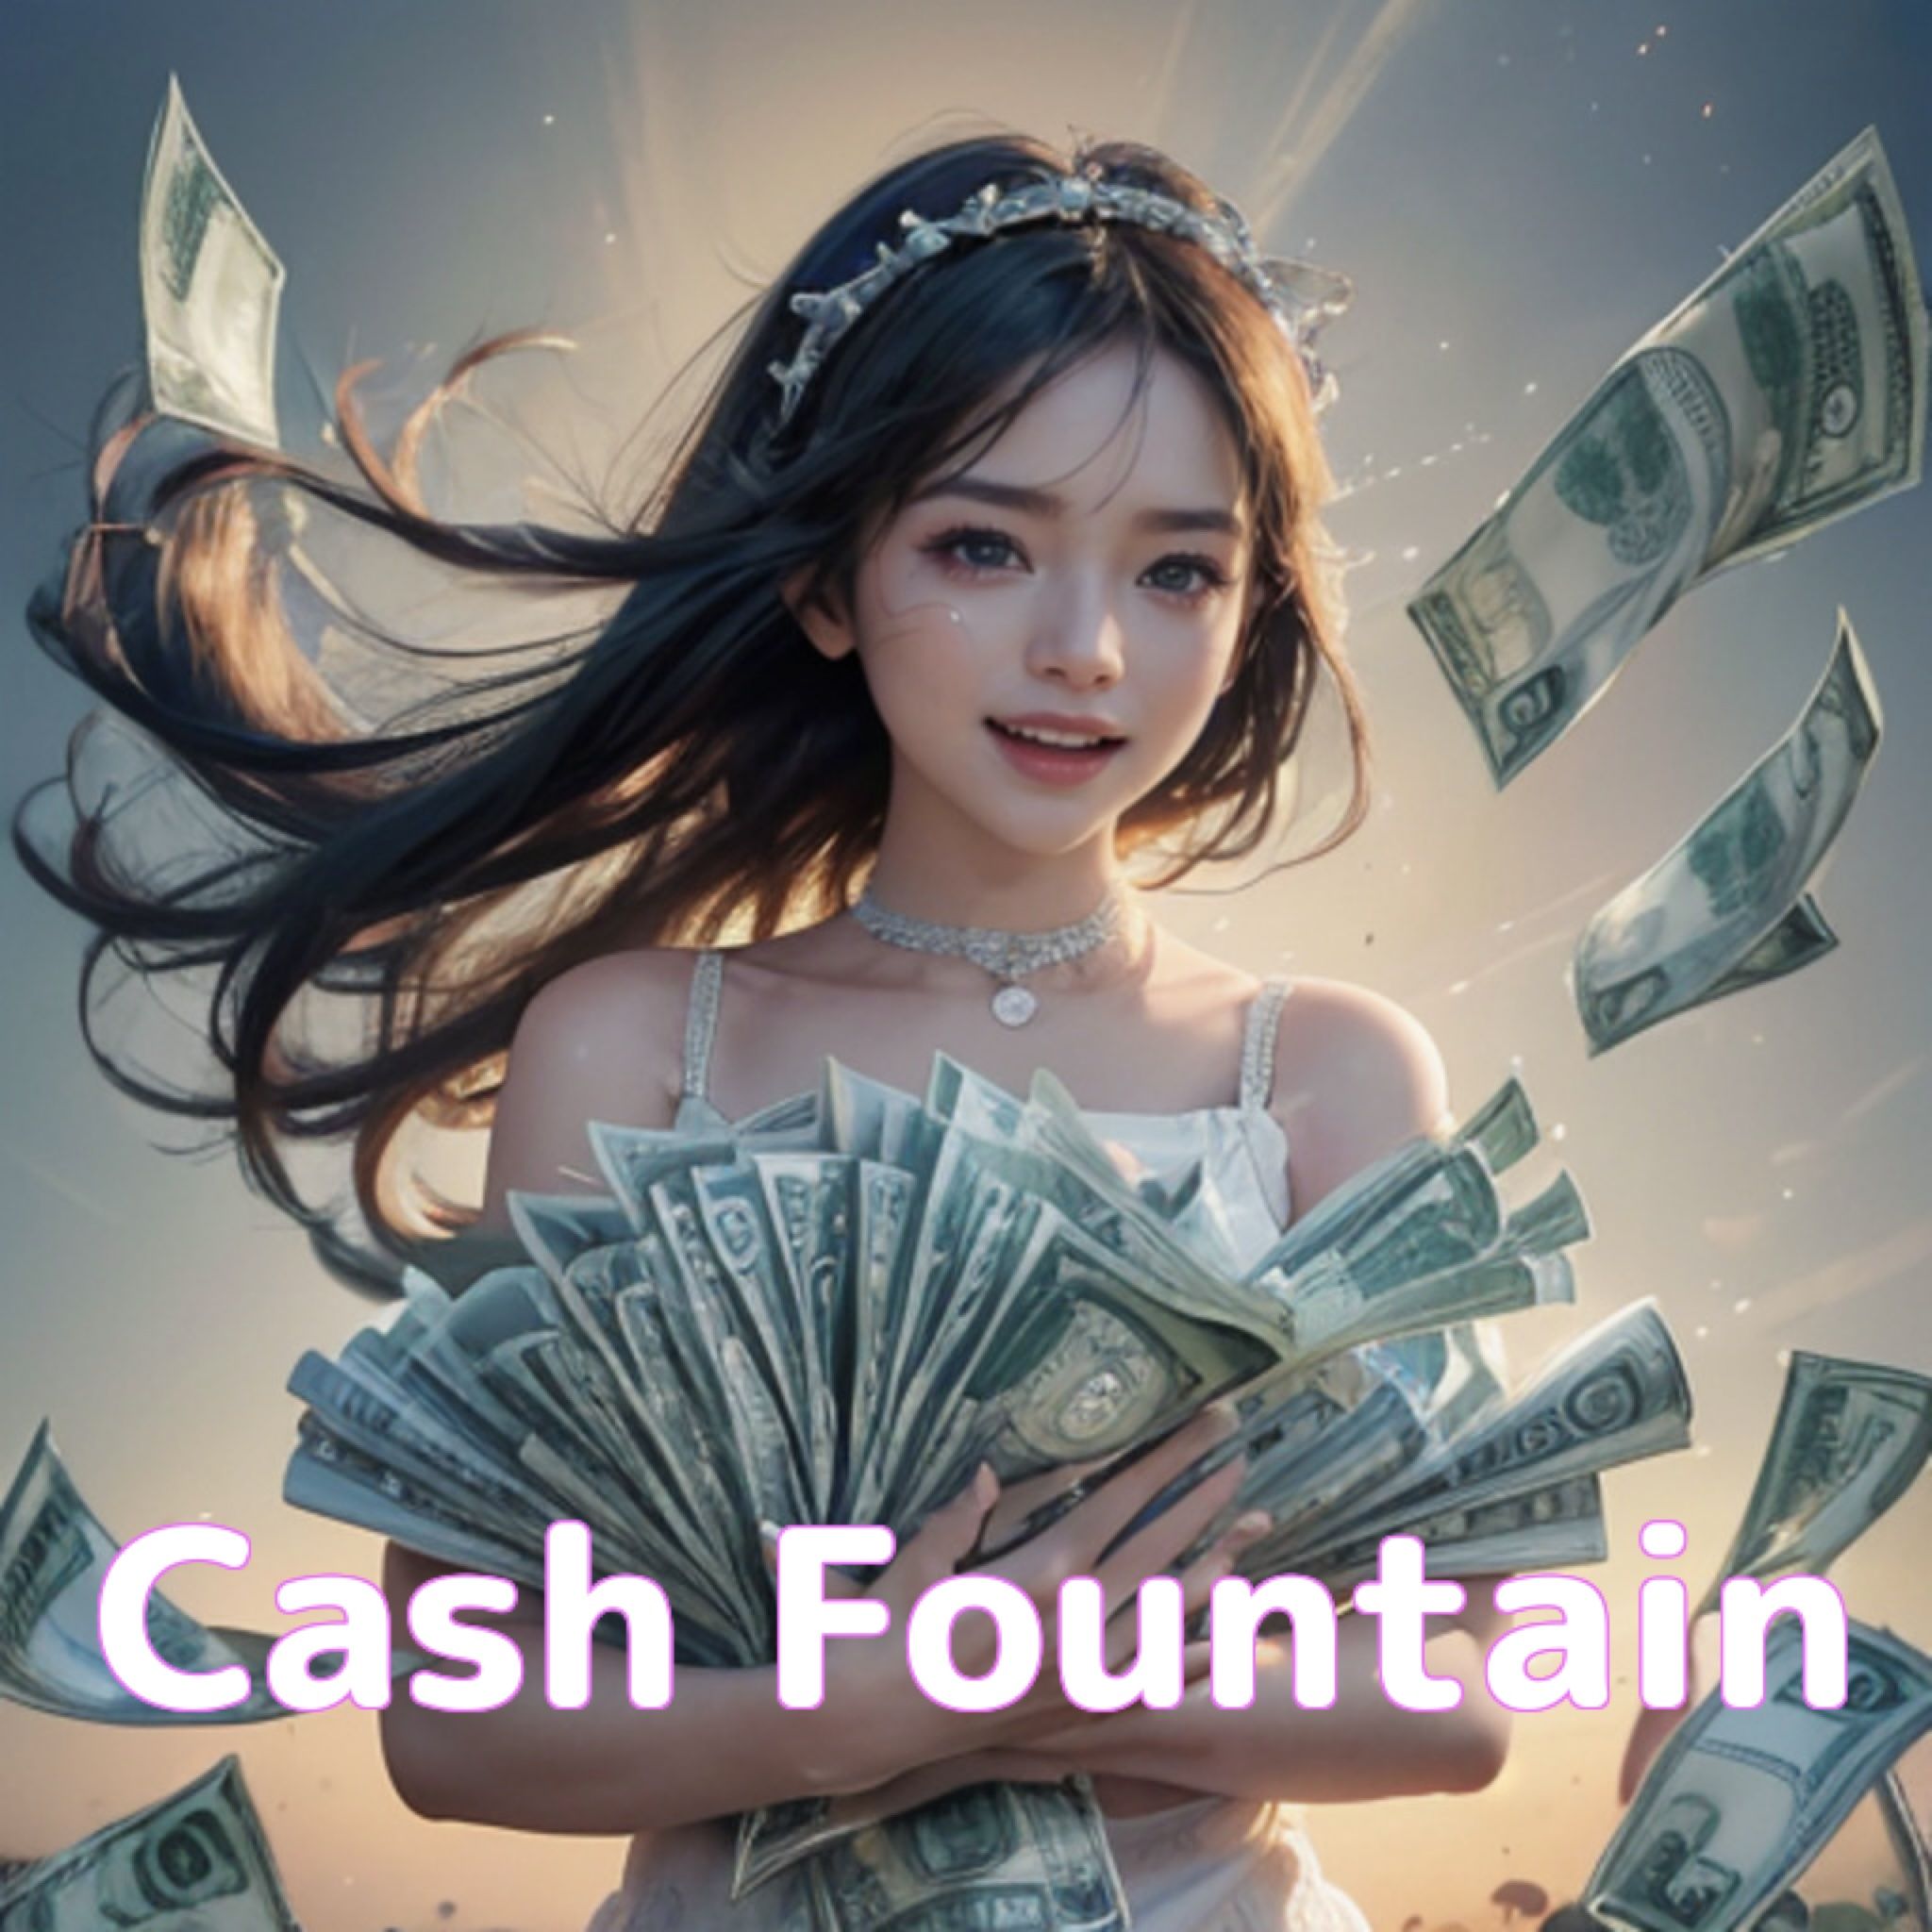 Cash Fountain ซื้อขายอัตโนมัติ